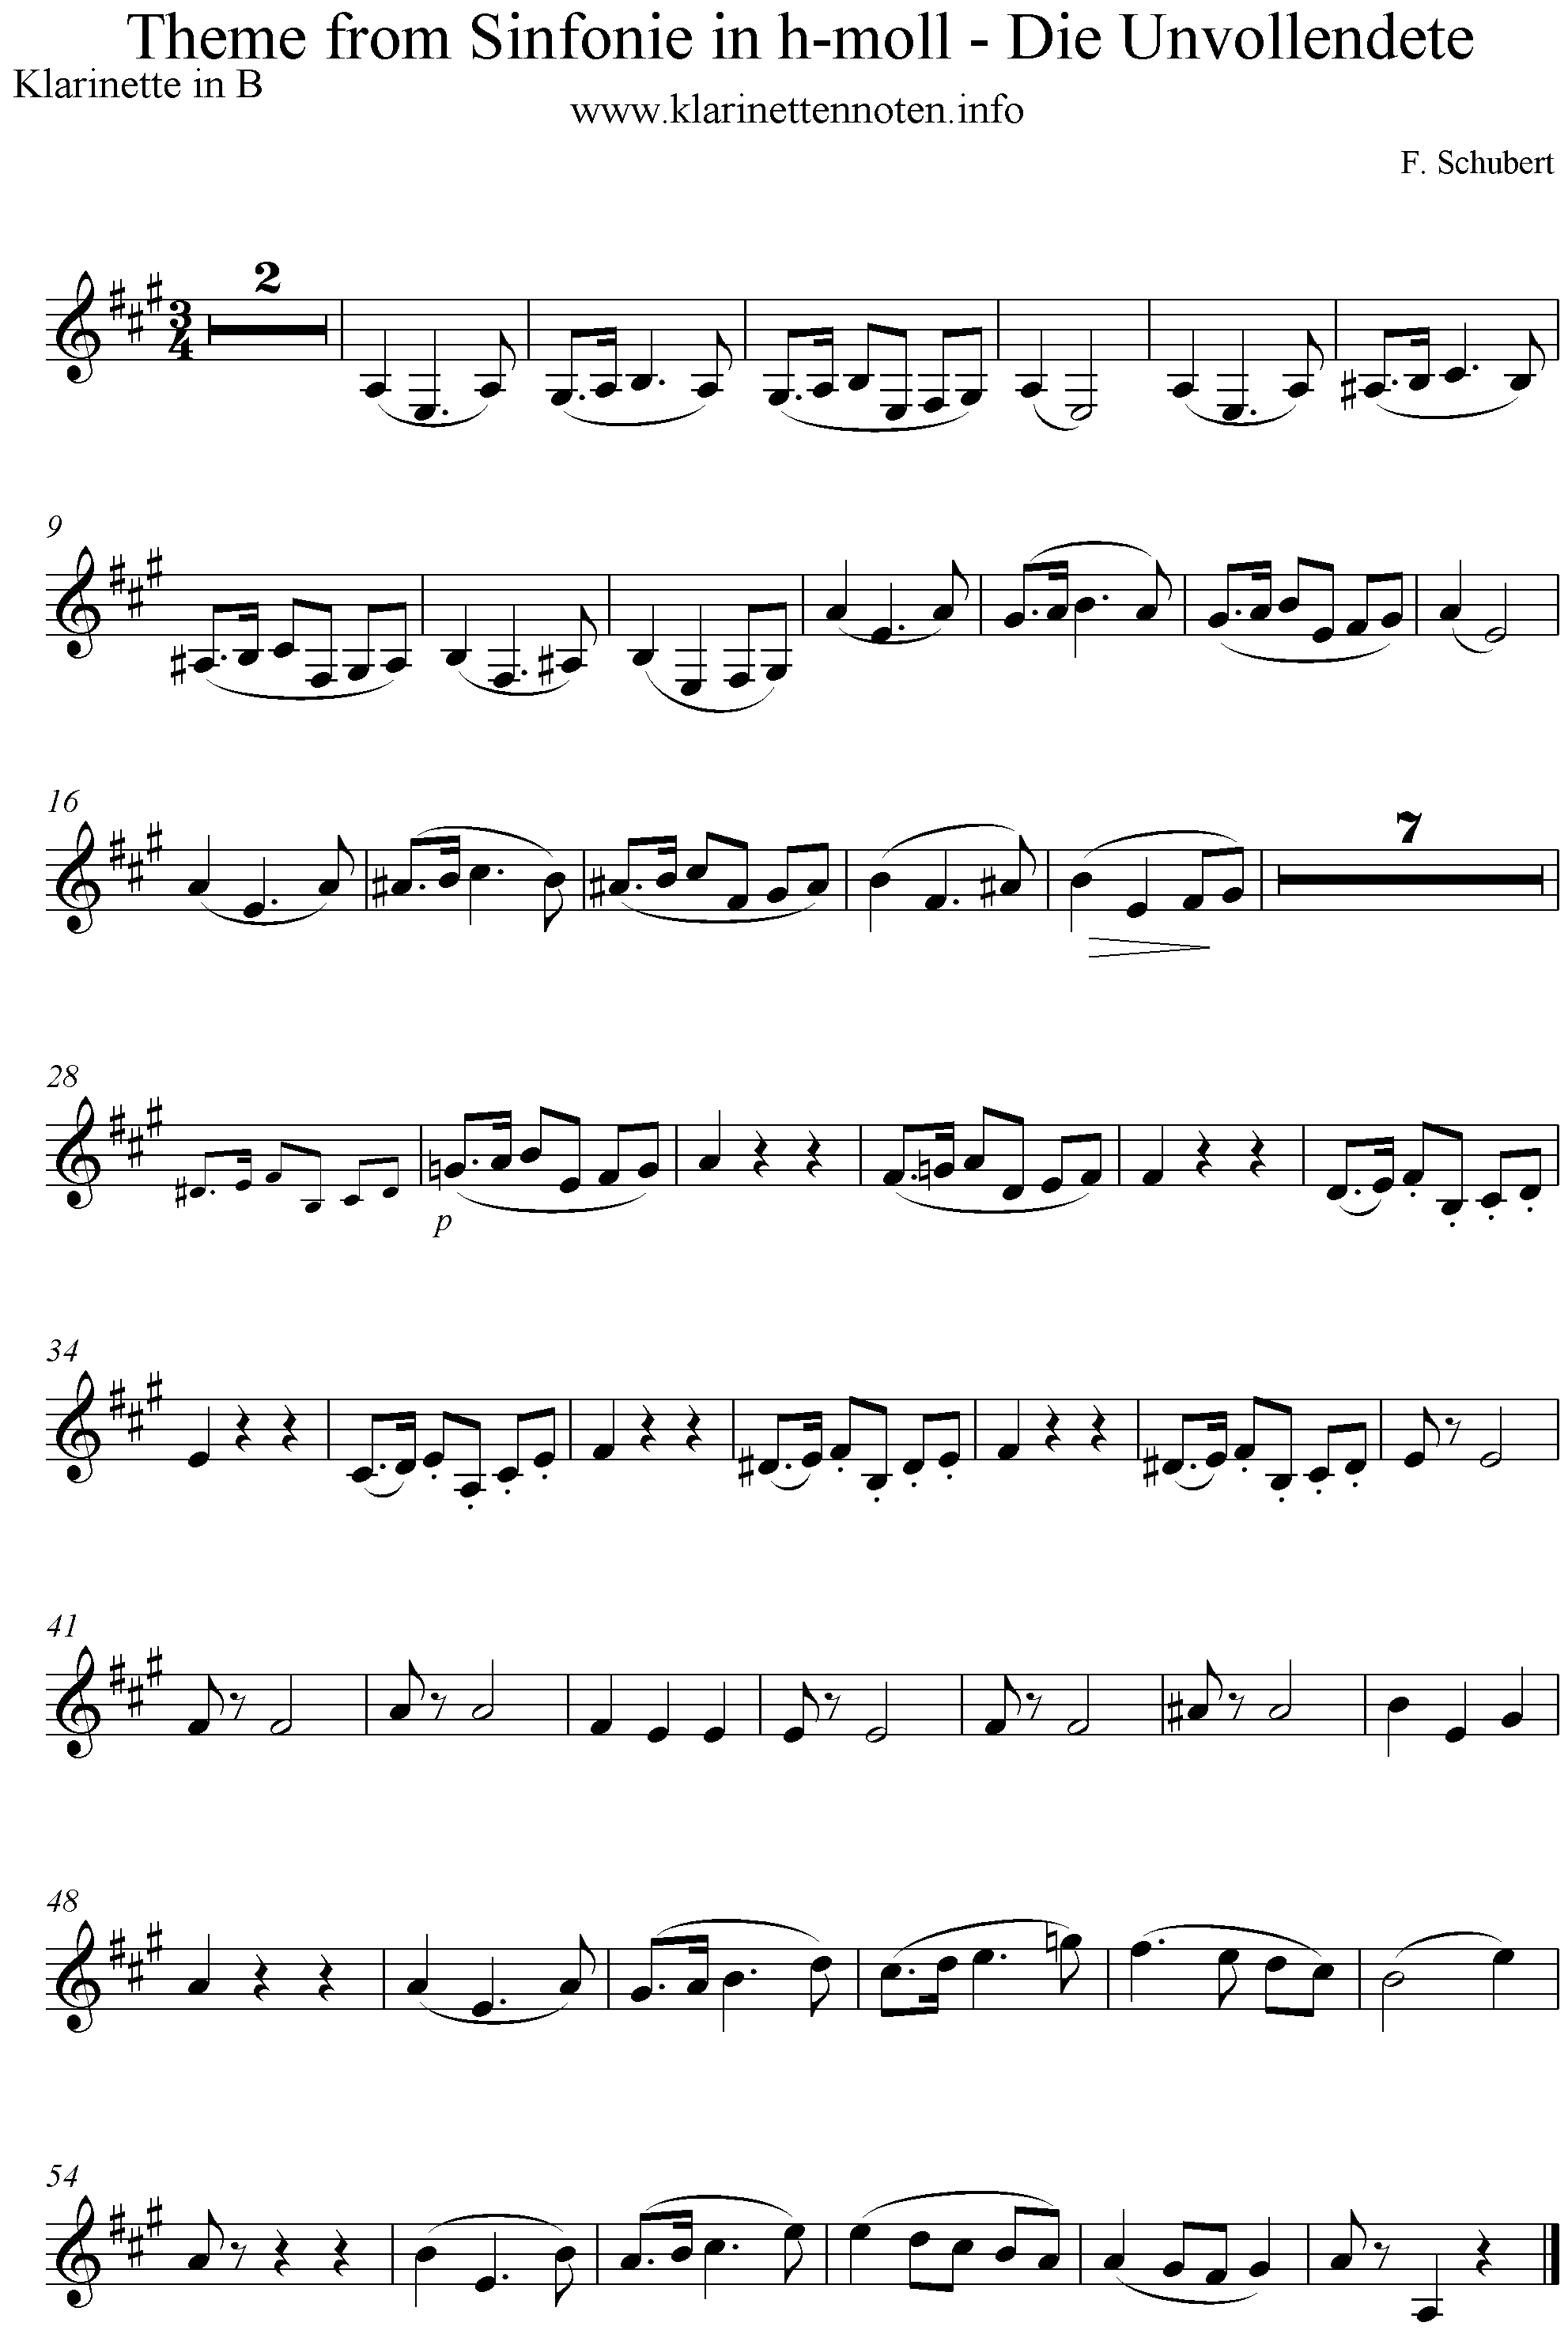 Noten Thema aus der Sinfonie in h-moll, Schubert, Die Unvollendete